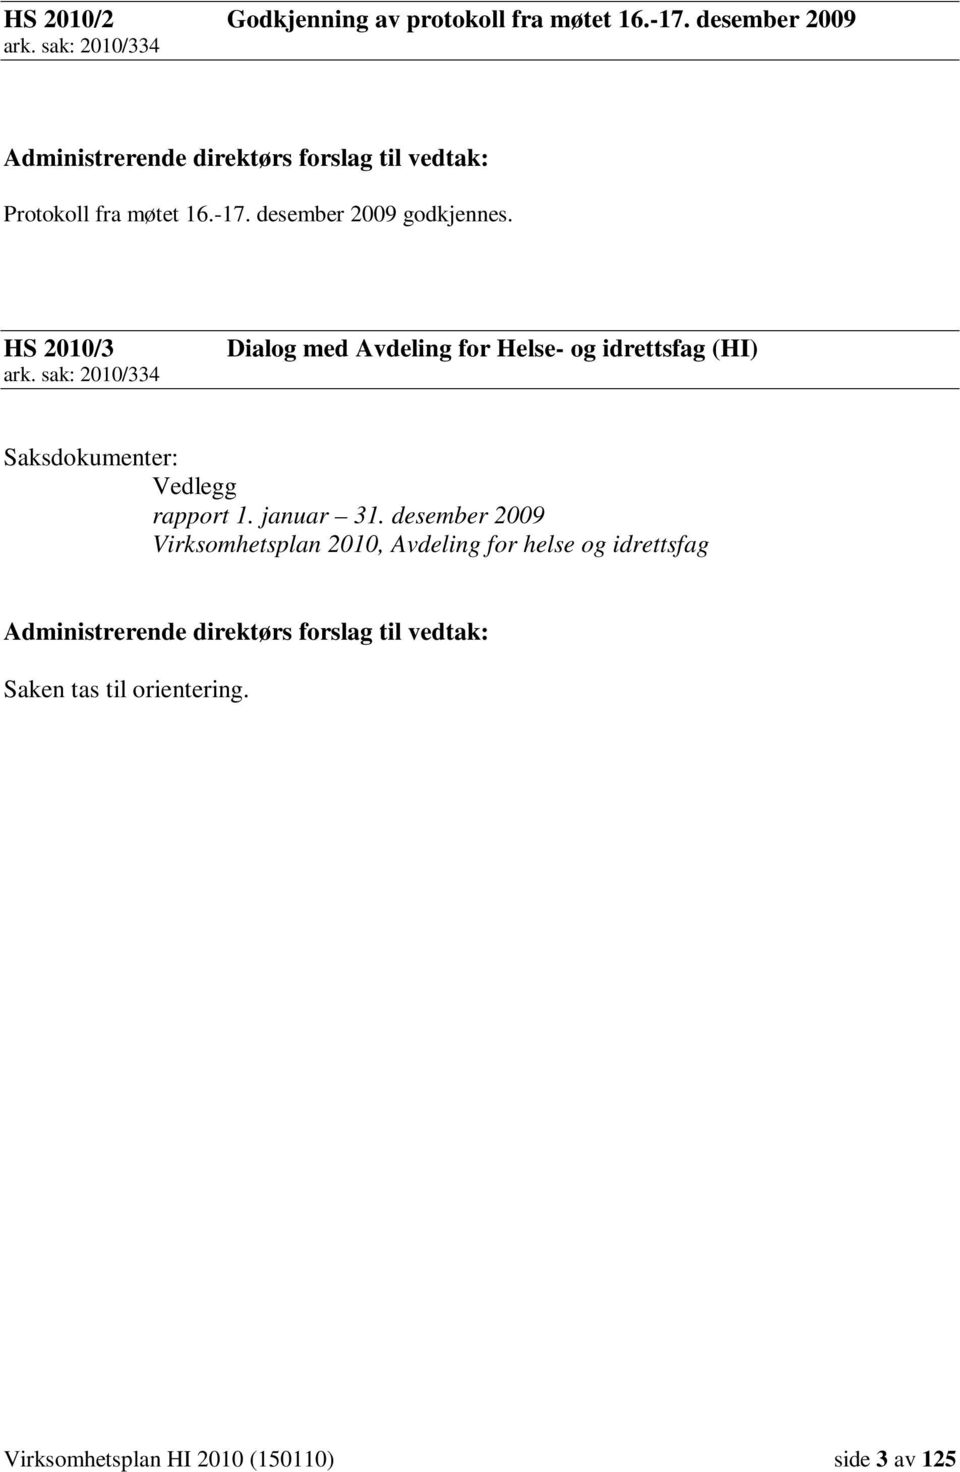 HS 2010/3 ark. sak: 2010/334 Dialog med Avdeling for Helse- og idrettsfag (HI) Saksdokumenter: Vedlegg rapport 1. januar 31.